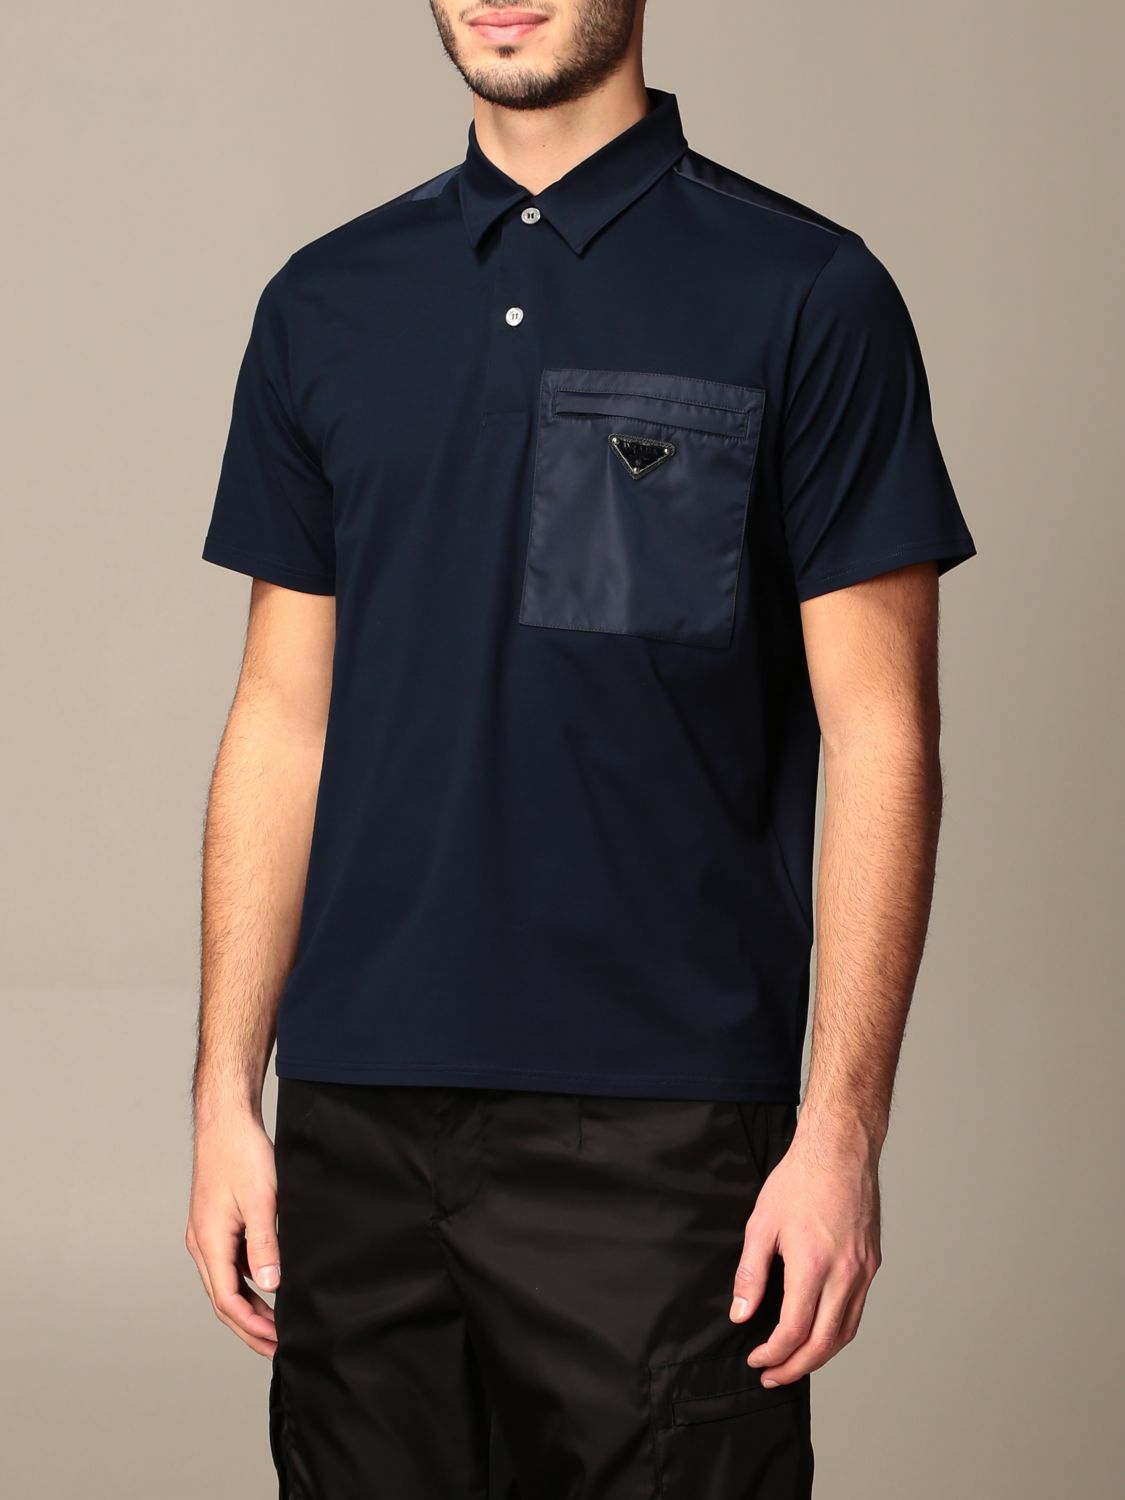 PRADA: cotton piqué polo shirt with nylon pocket | Polo Shirt Prada Men ...